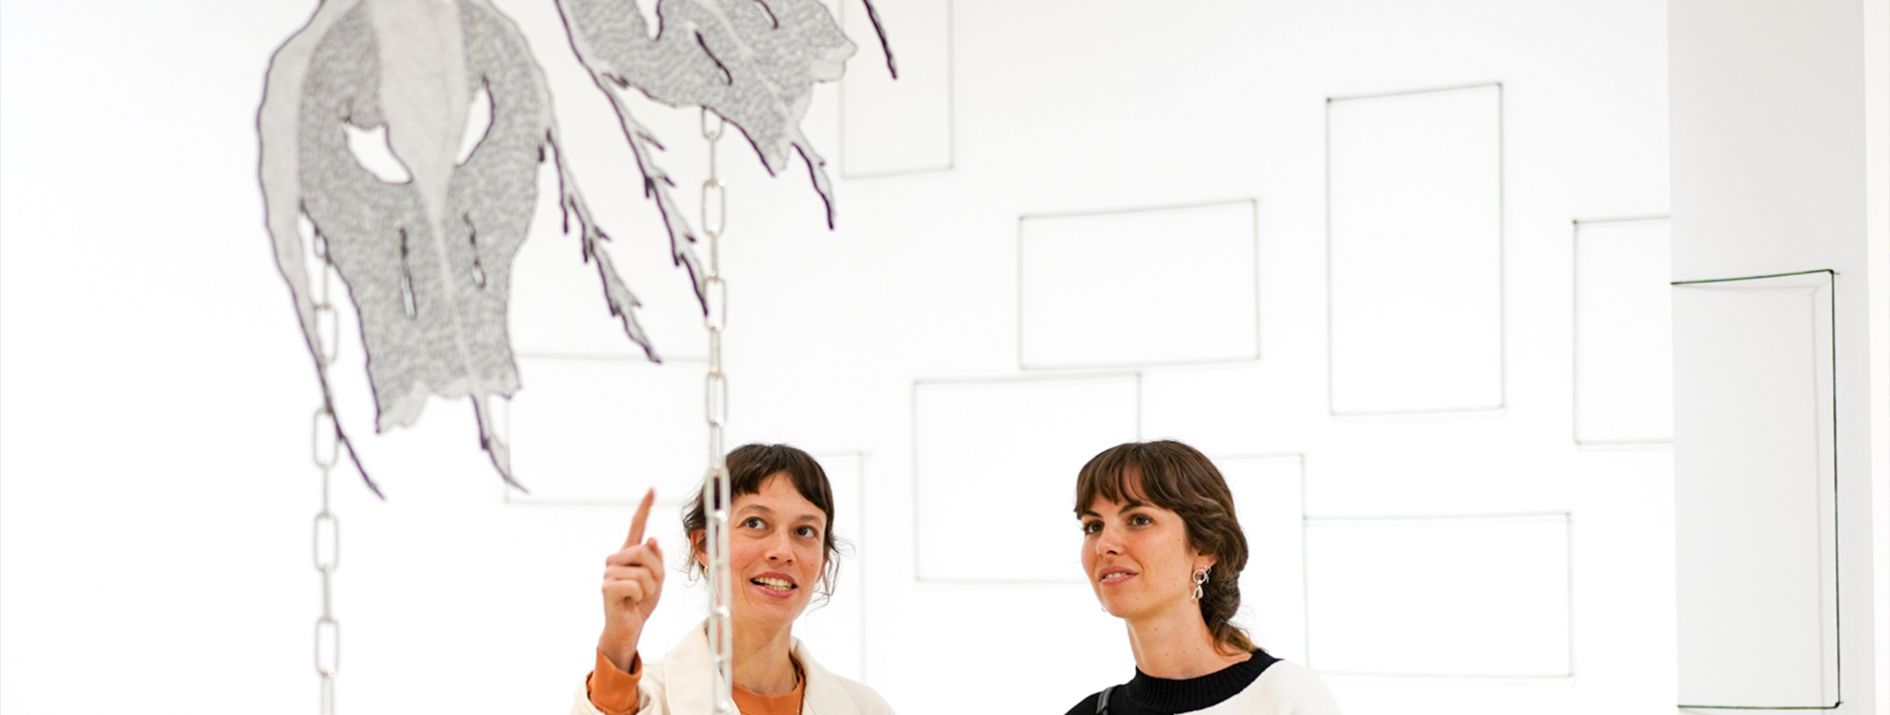 2 women in gallery of modern art